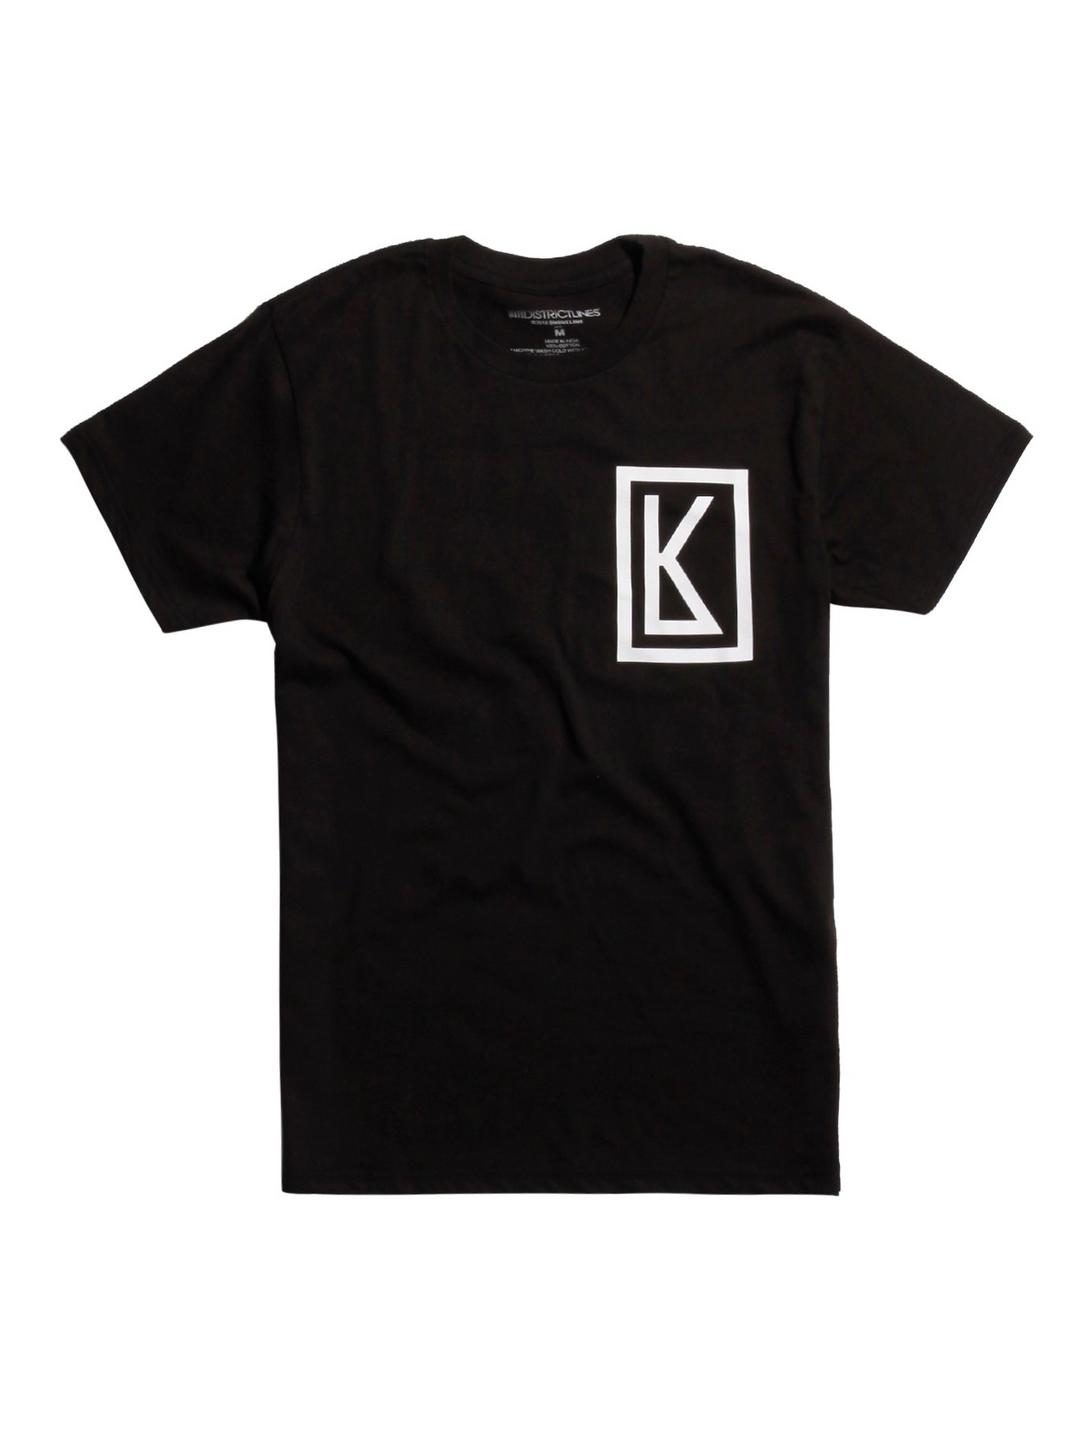 Kian Lawley 95 T-Shirt, BLACK, hi-res